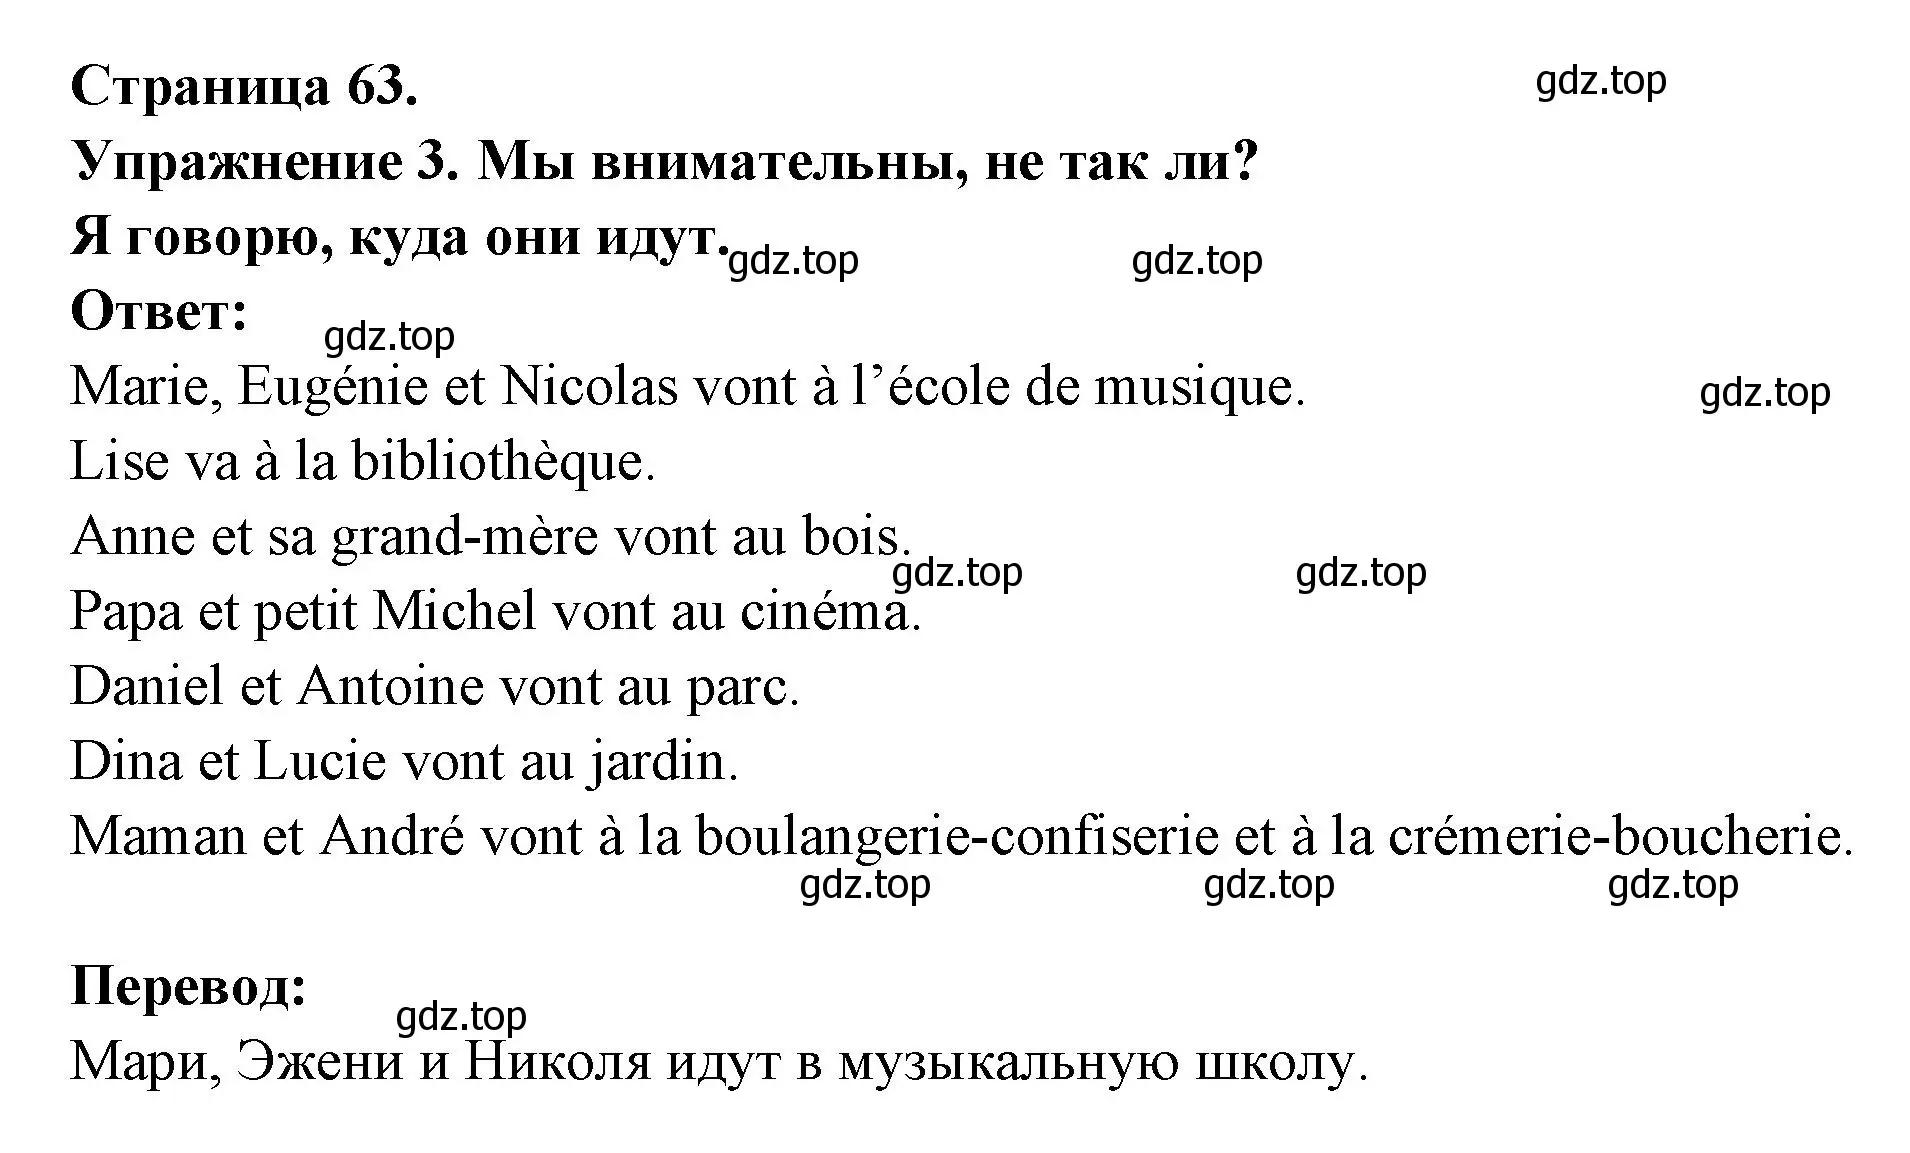 Решение  63 (страница 63) гдз по французскому языку 3 класс Кулигин, Кирьянова, учебник 2 часть